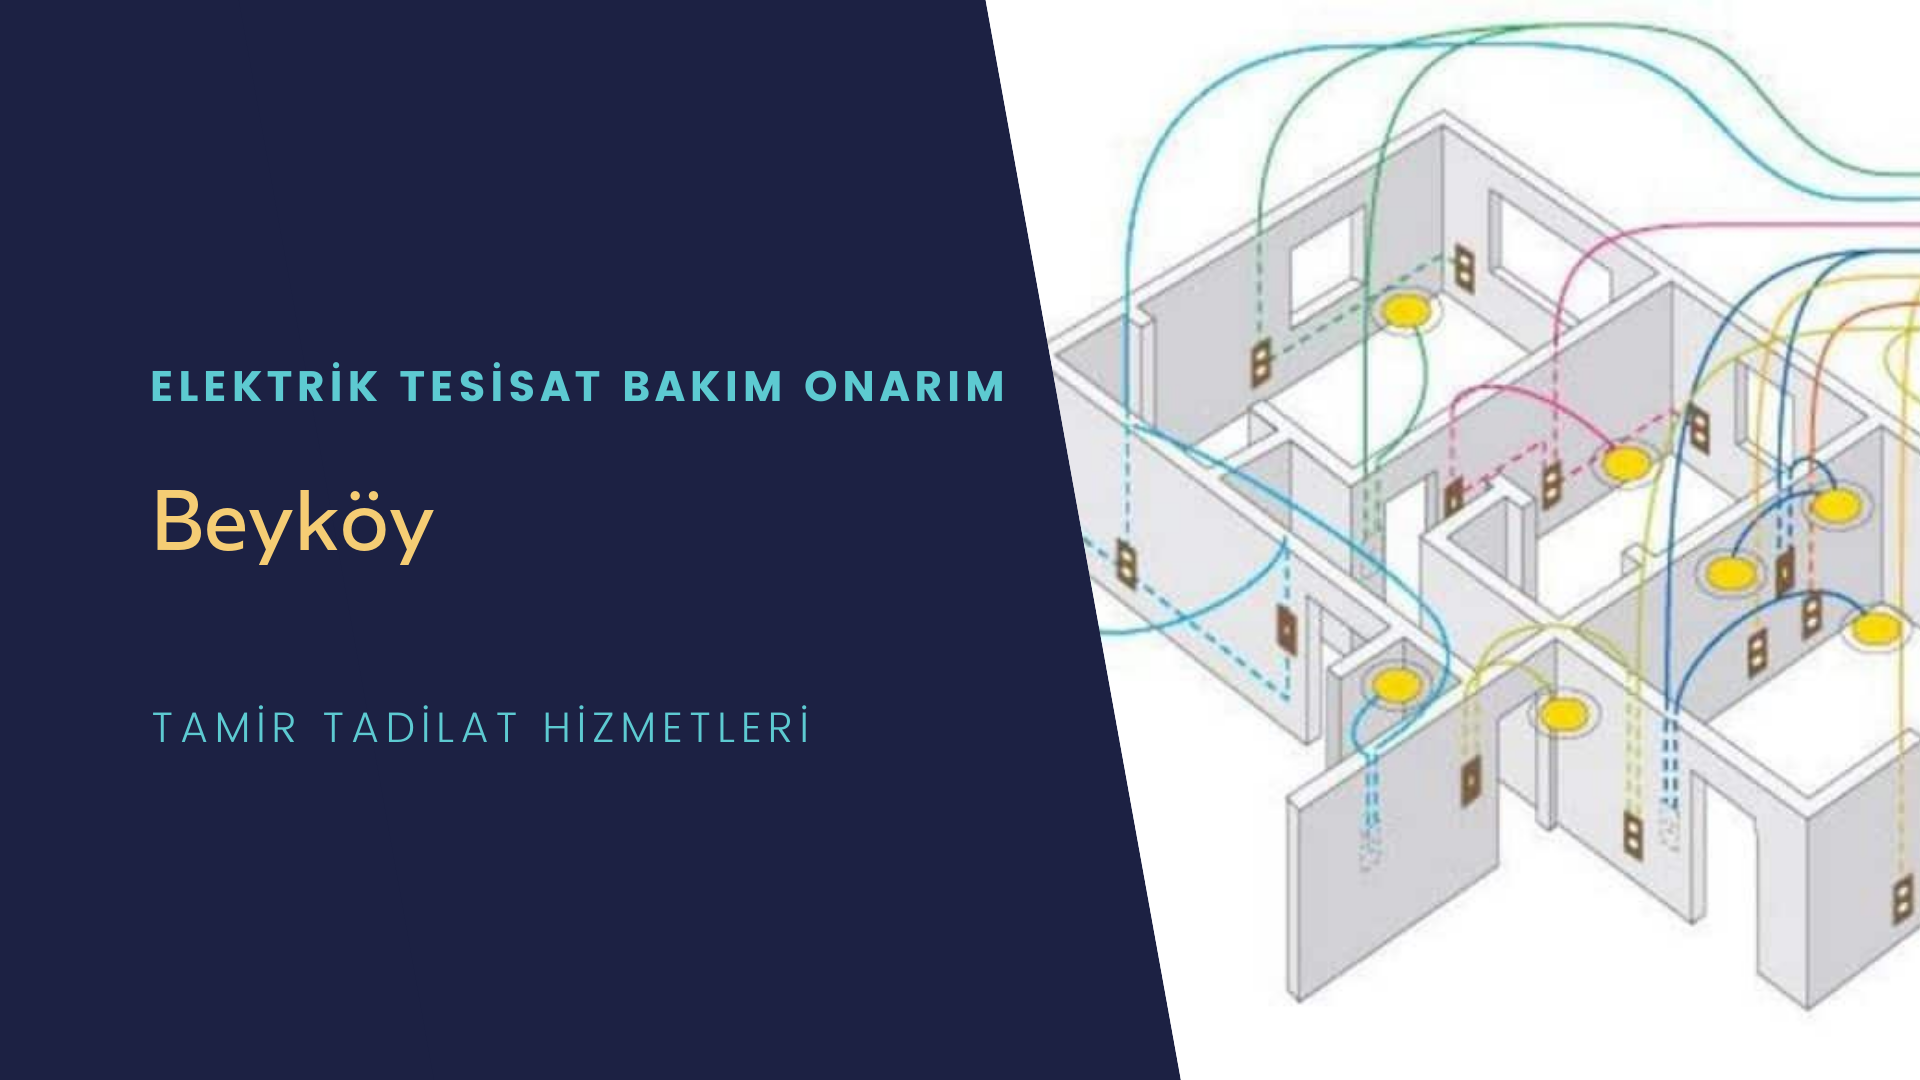 Beyköy'de elektrik tesisatı ustalarımı arıyorsunuz doğru adrestenizi Beyköy elektrik tesisatı ustalarımız 7/24 sizlere hizmet vermekten mutluluk duyar.